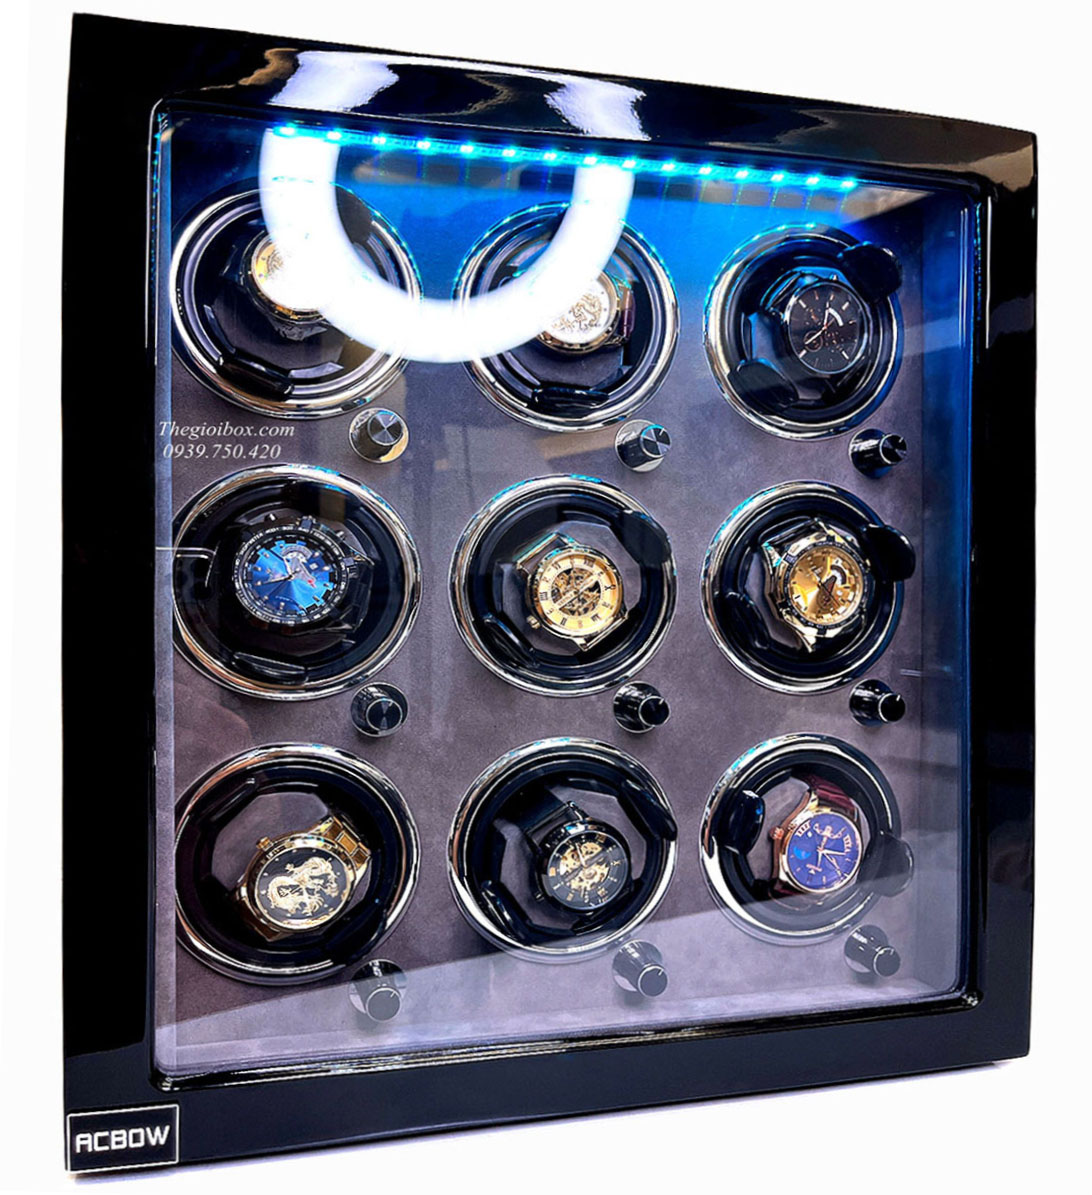 Tủ-Két xoay 9 đồng hồ cơ ACBOW có ổ khoá vân tay + đèn LED nội thất nhung xám cao cấp